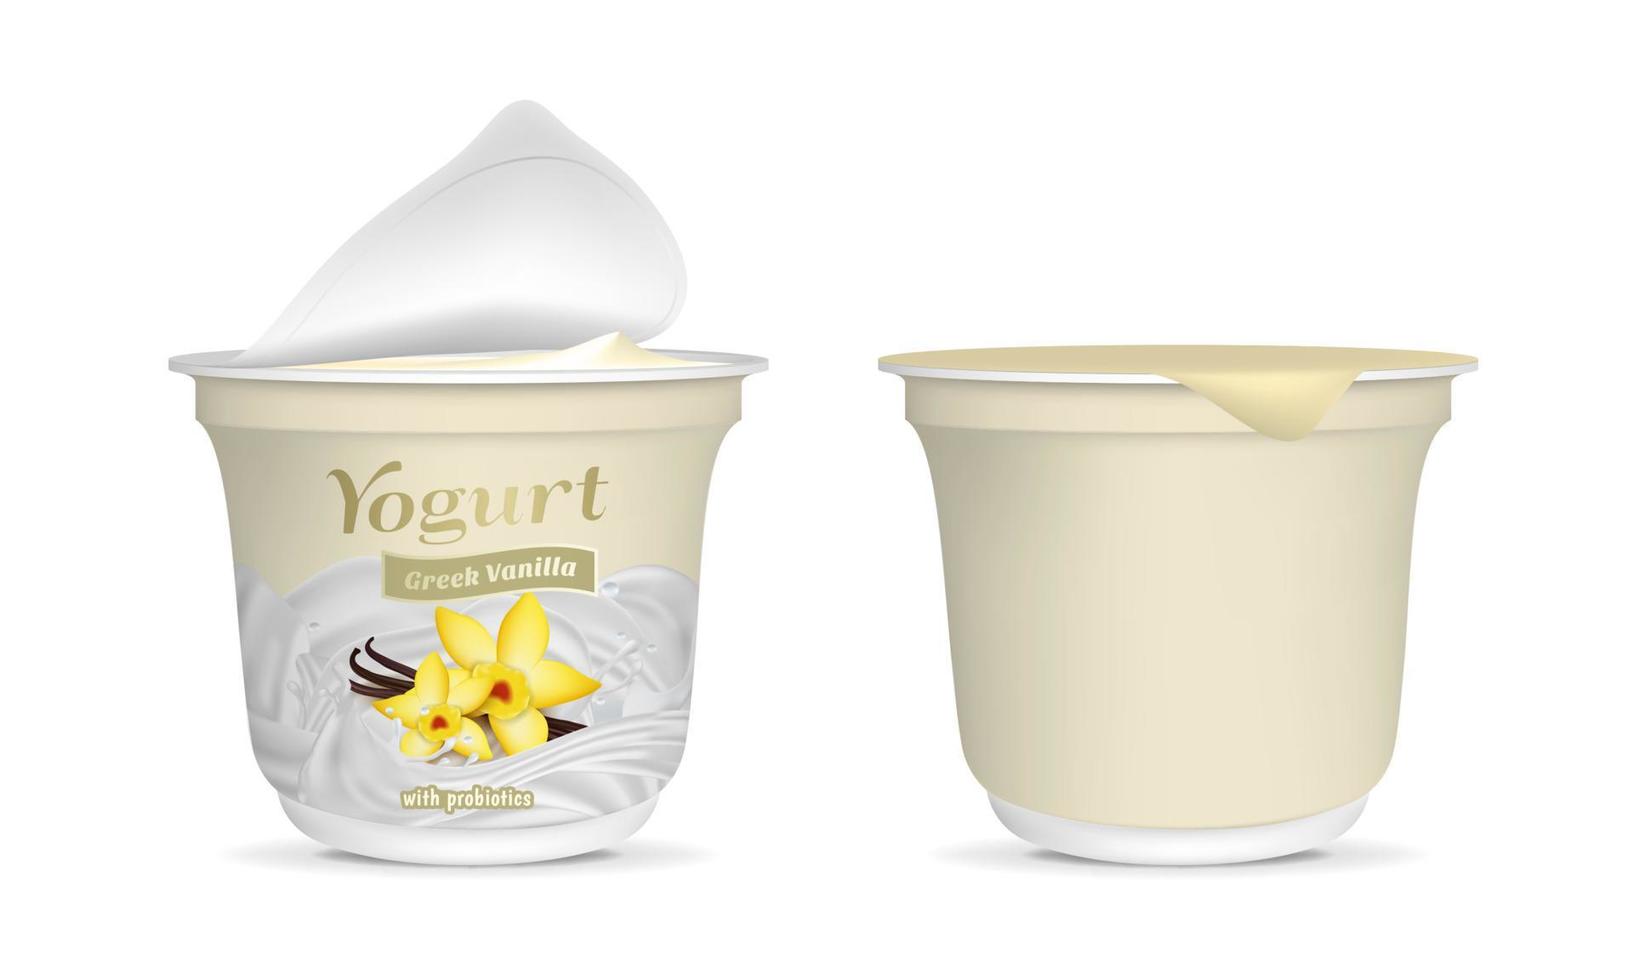 réaliste détaillé 3d ouvert grec vanille yaourt emballage récipient et vide modèle maquette ensemble. vecteur